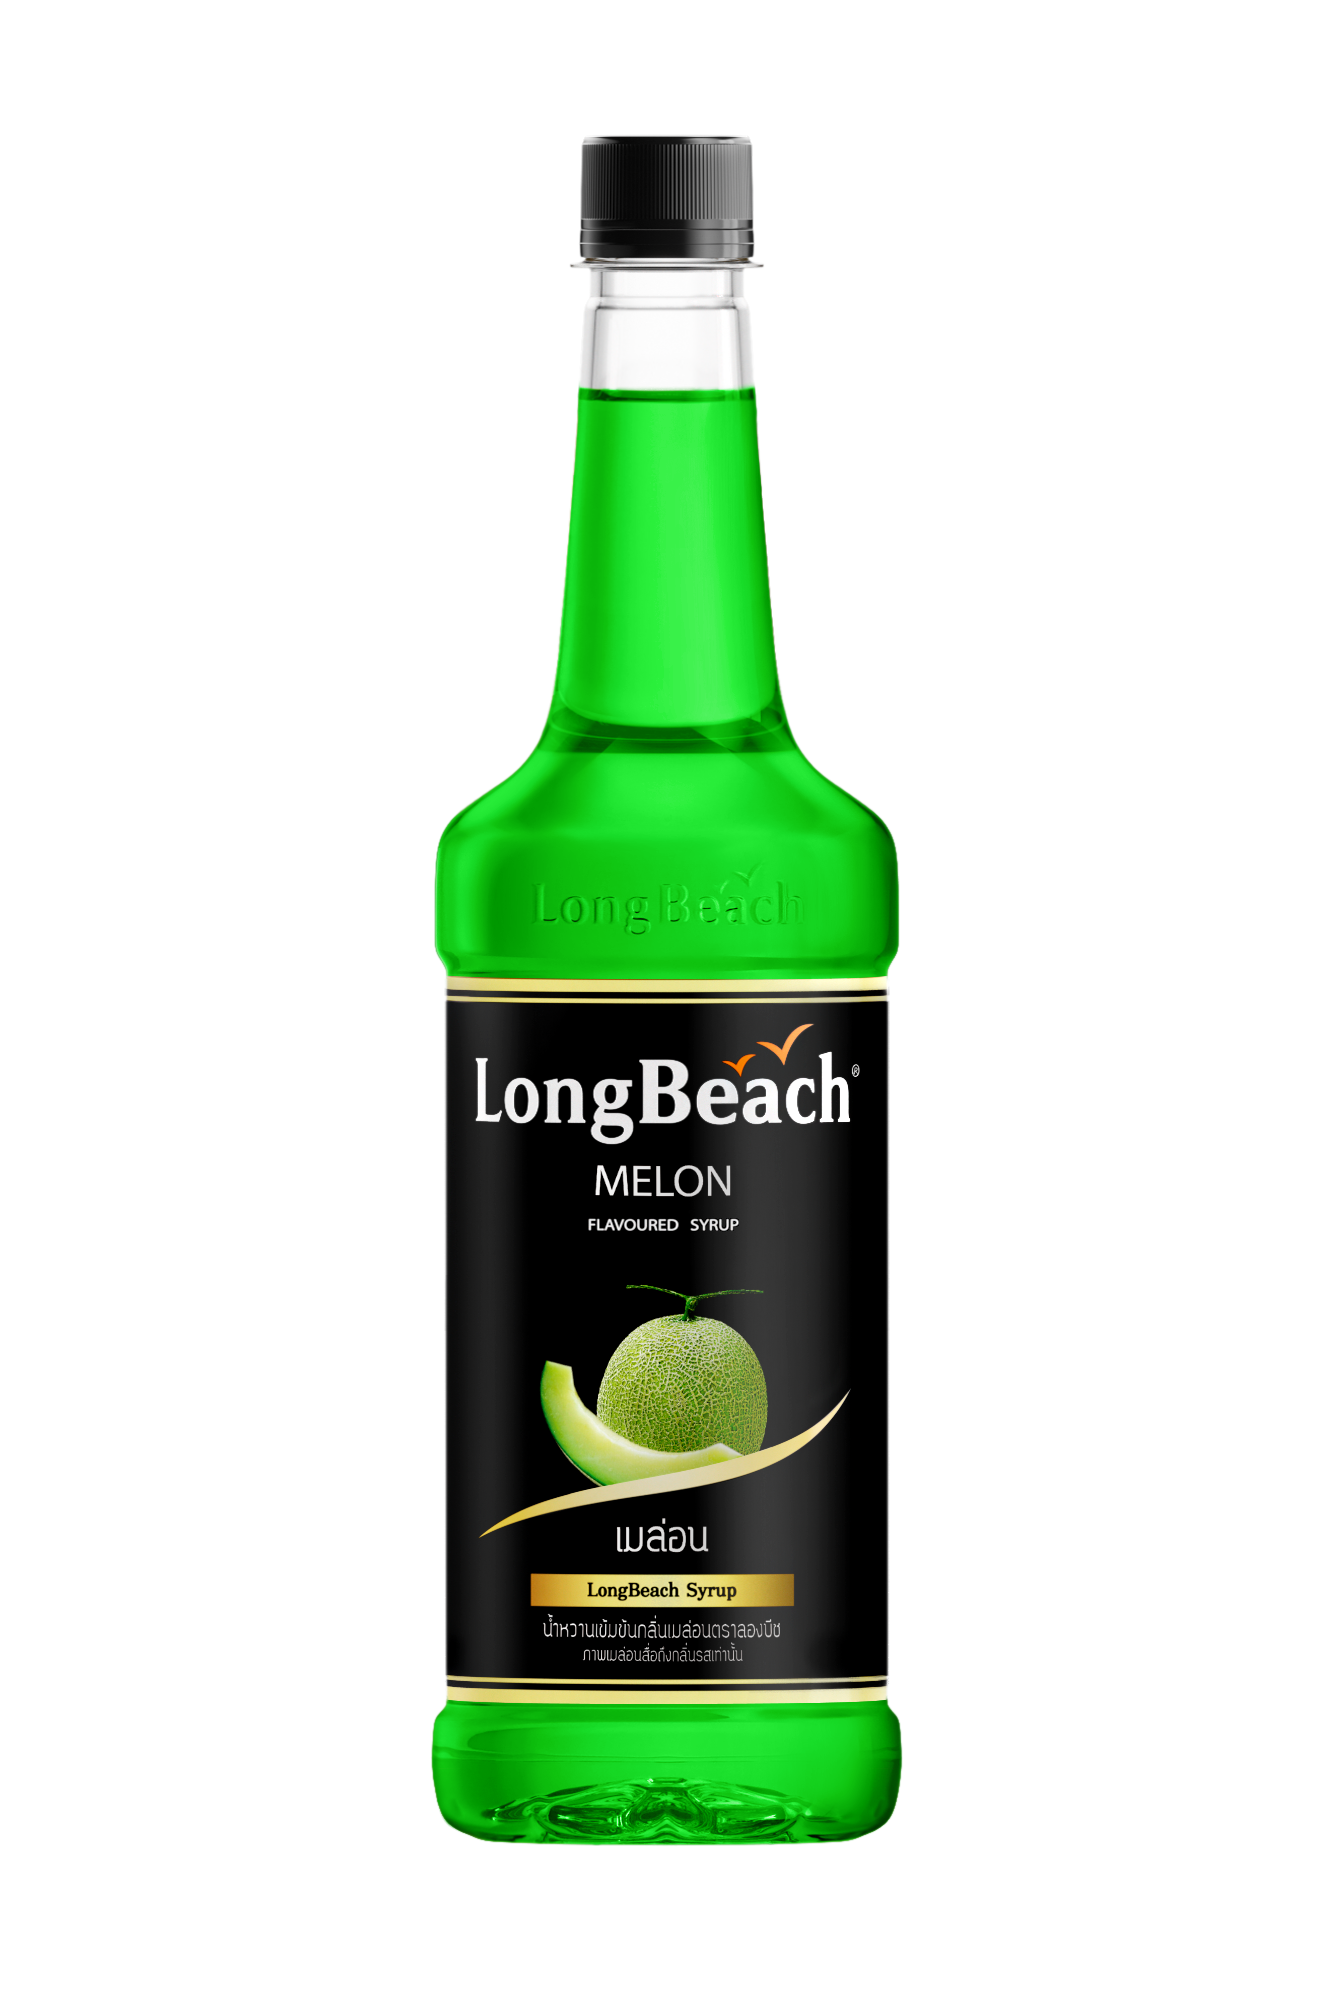 LongBeach Strawberry Syrup 740 ml.